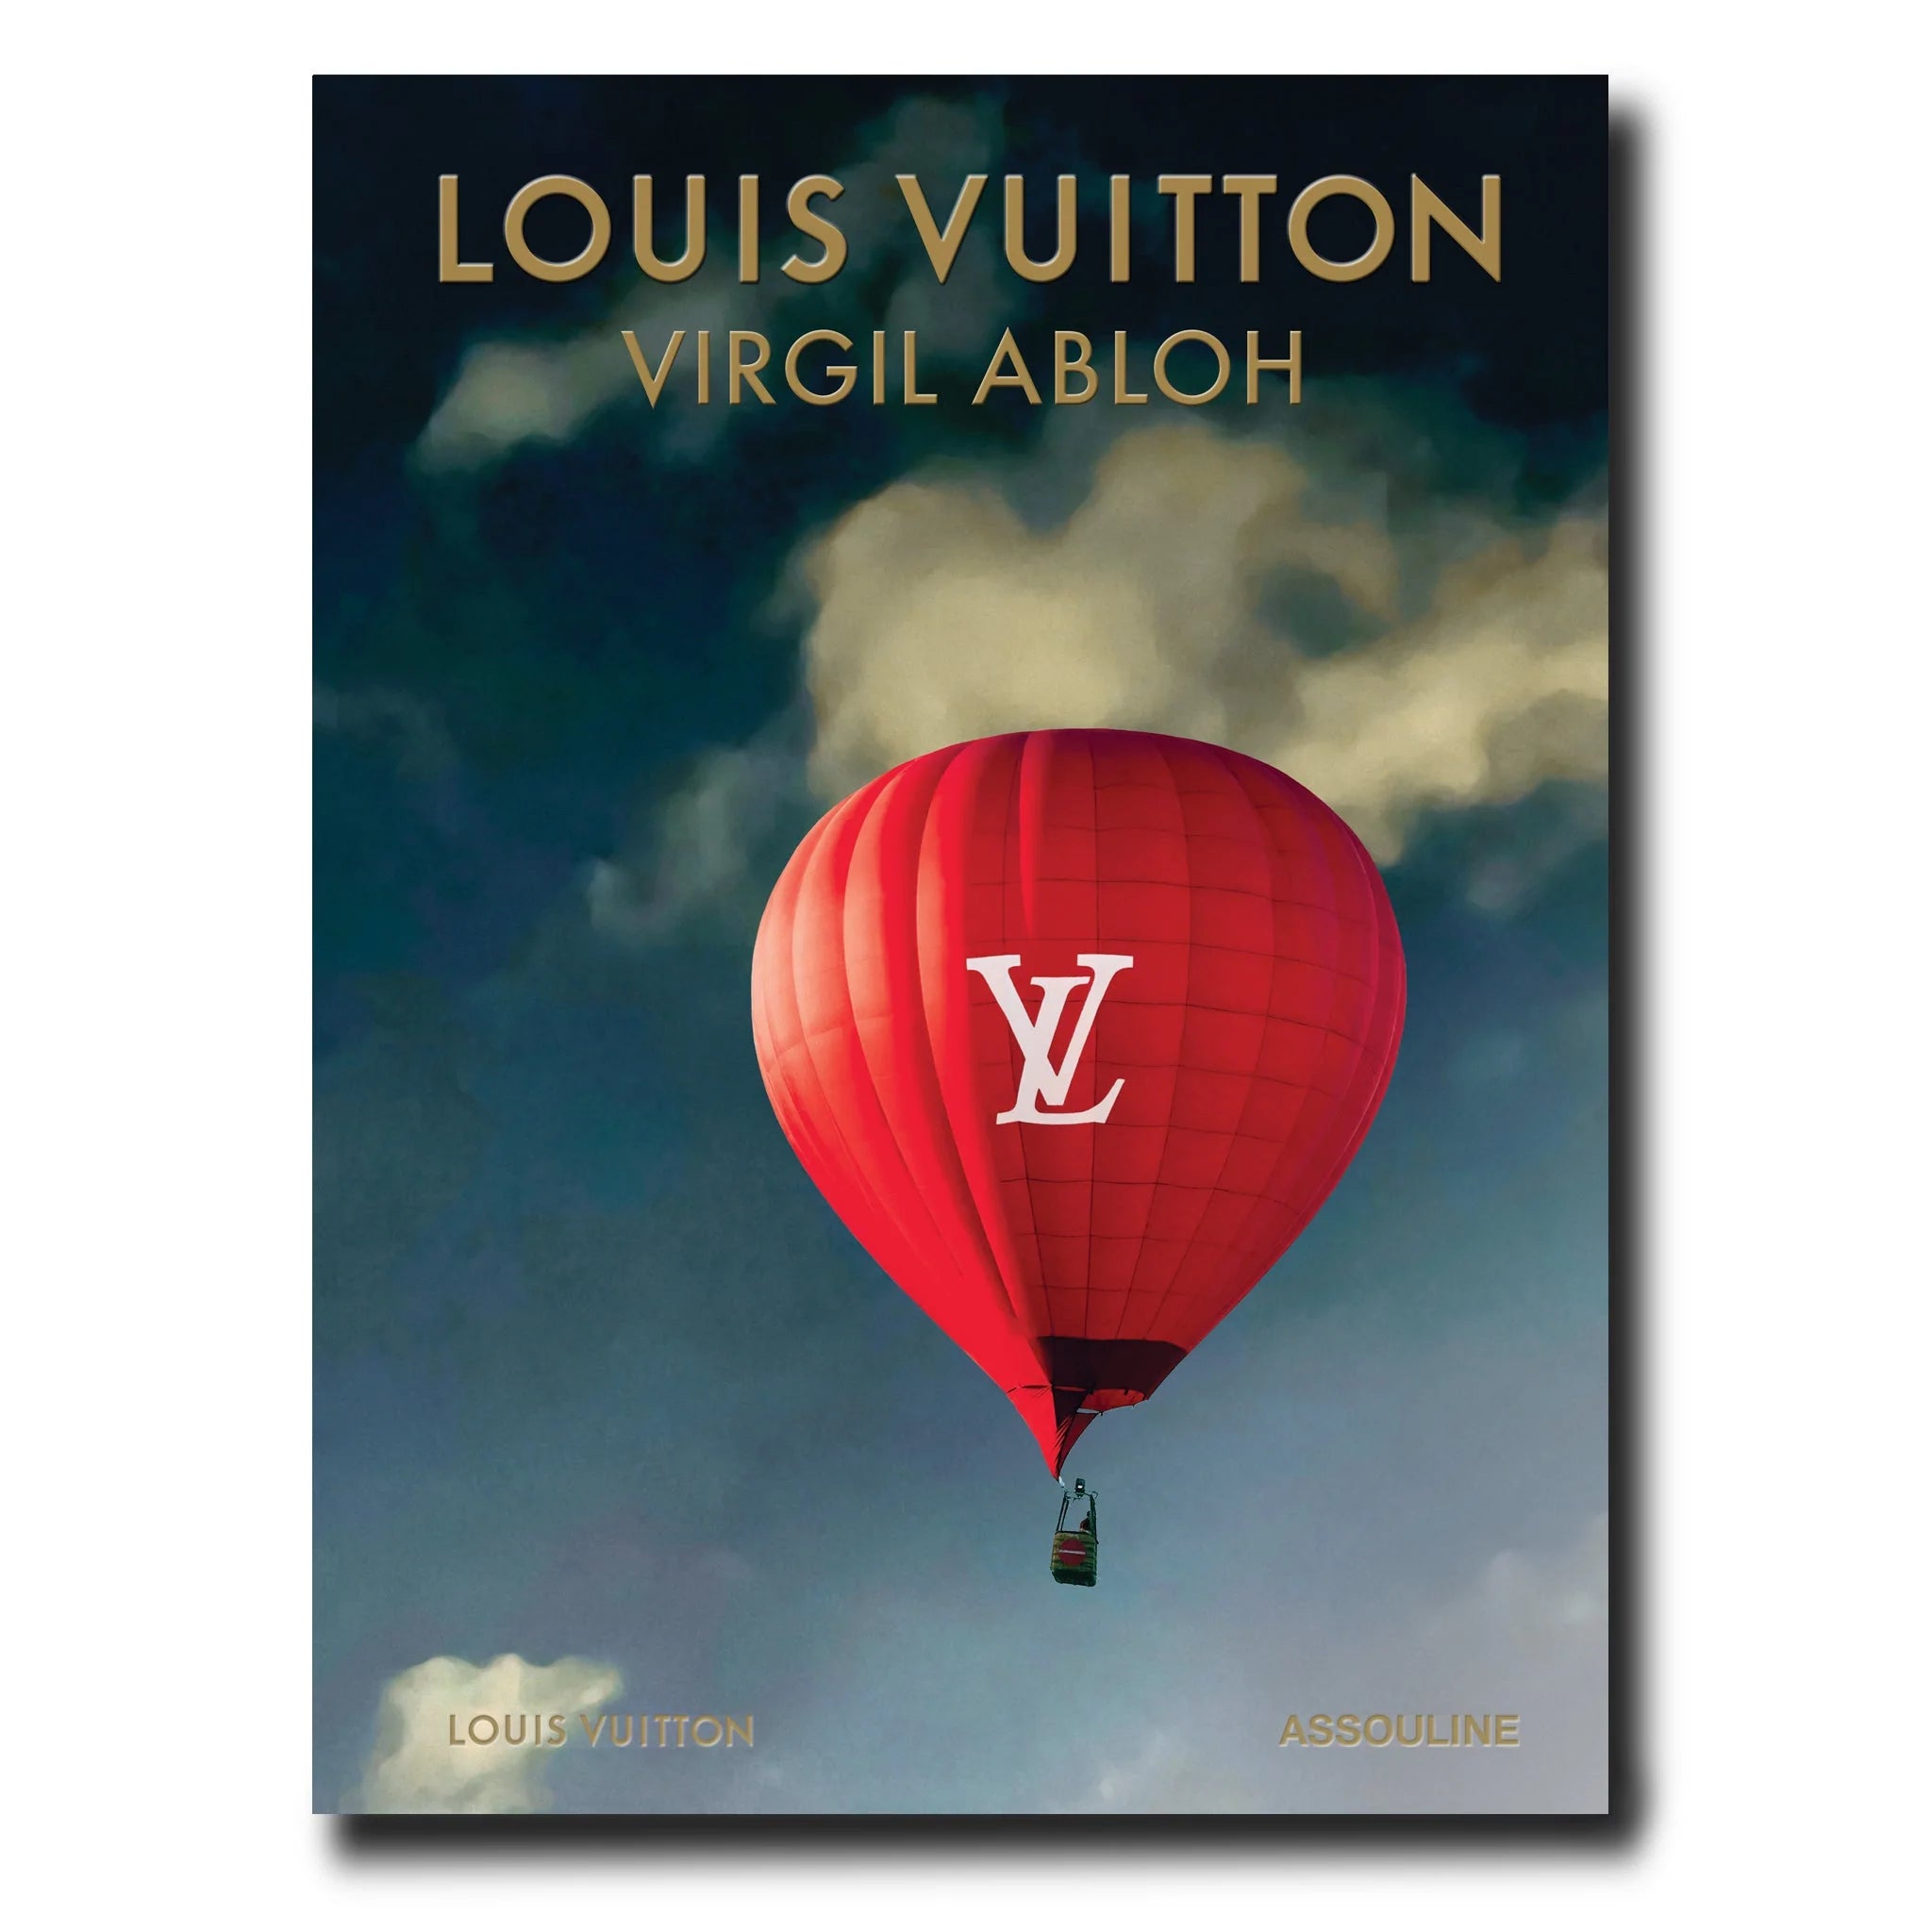 LIVRE LOUIS VUITTON : VIRGIL ABLOH (CLASSIC BALLOON COVER)